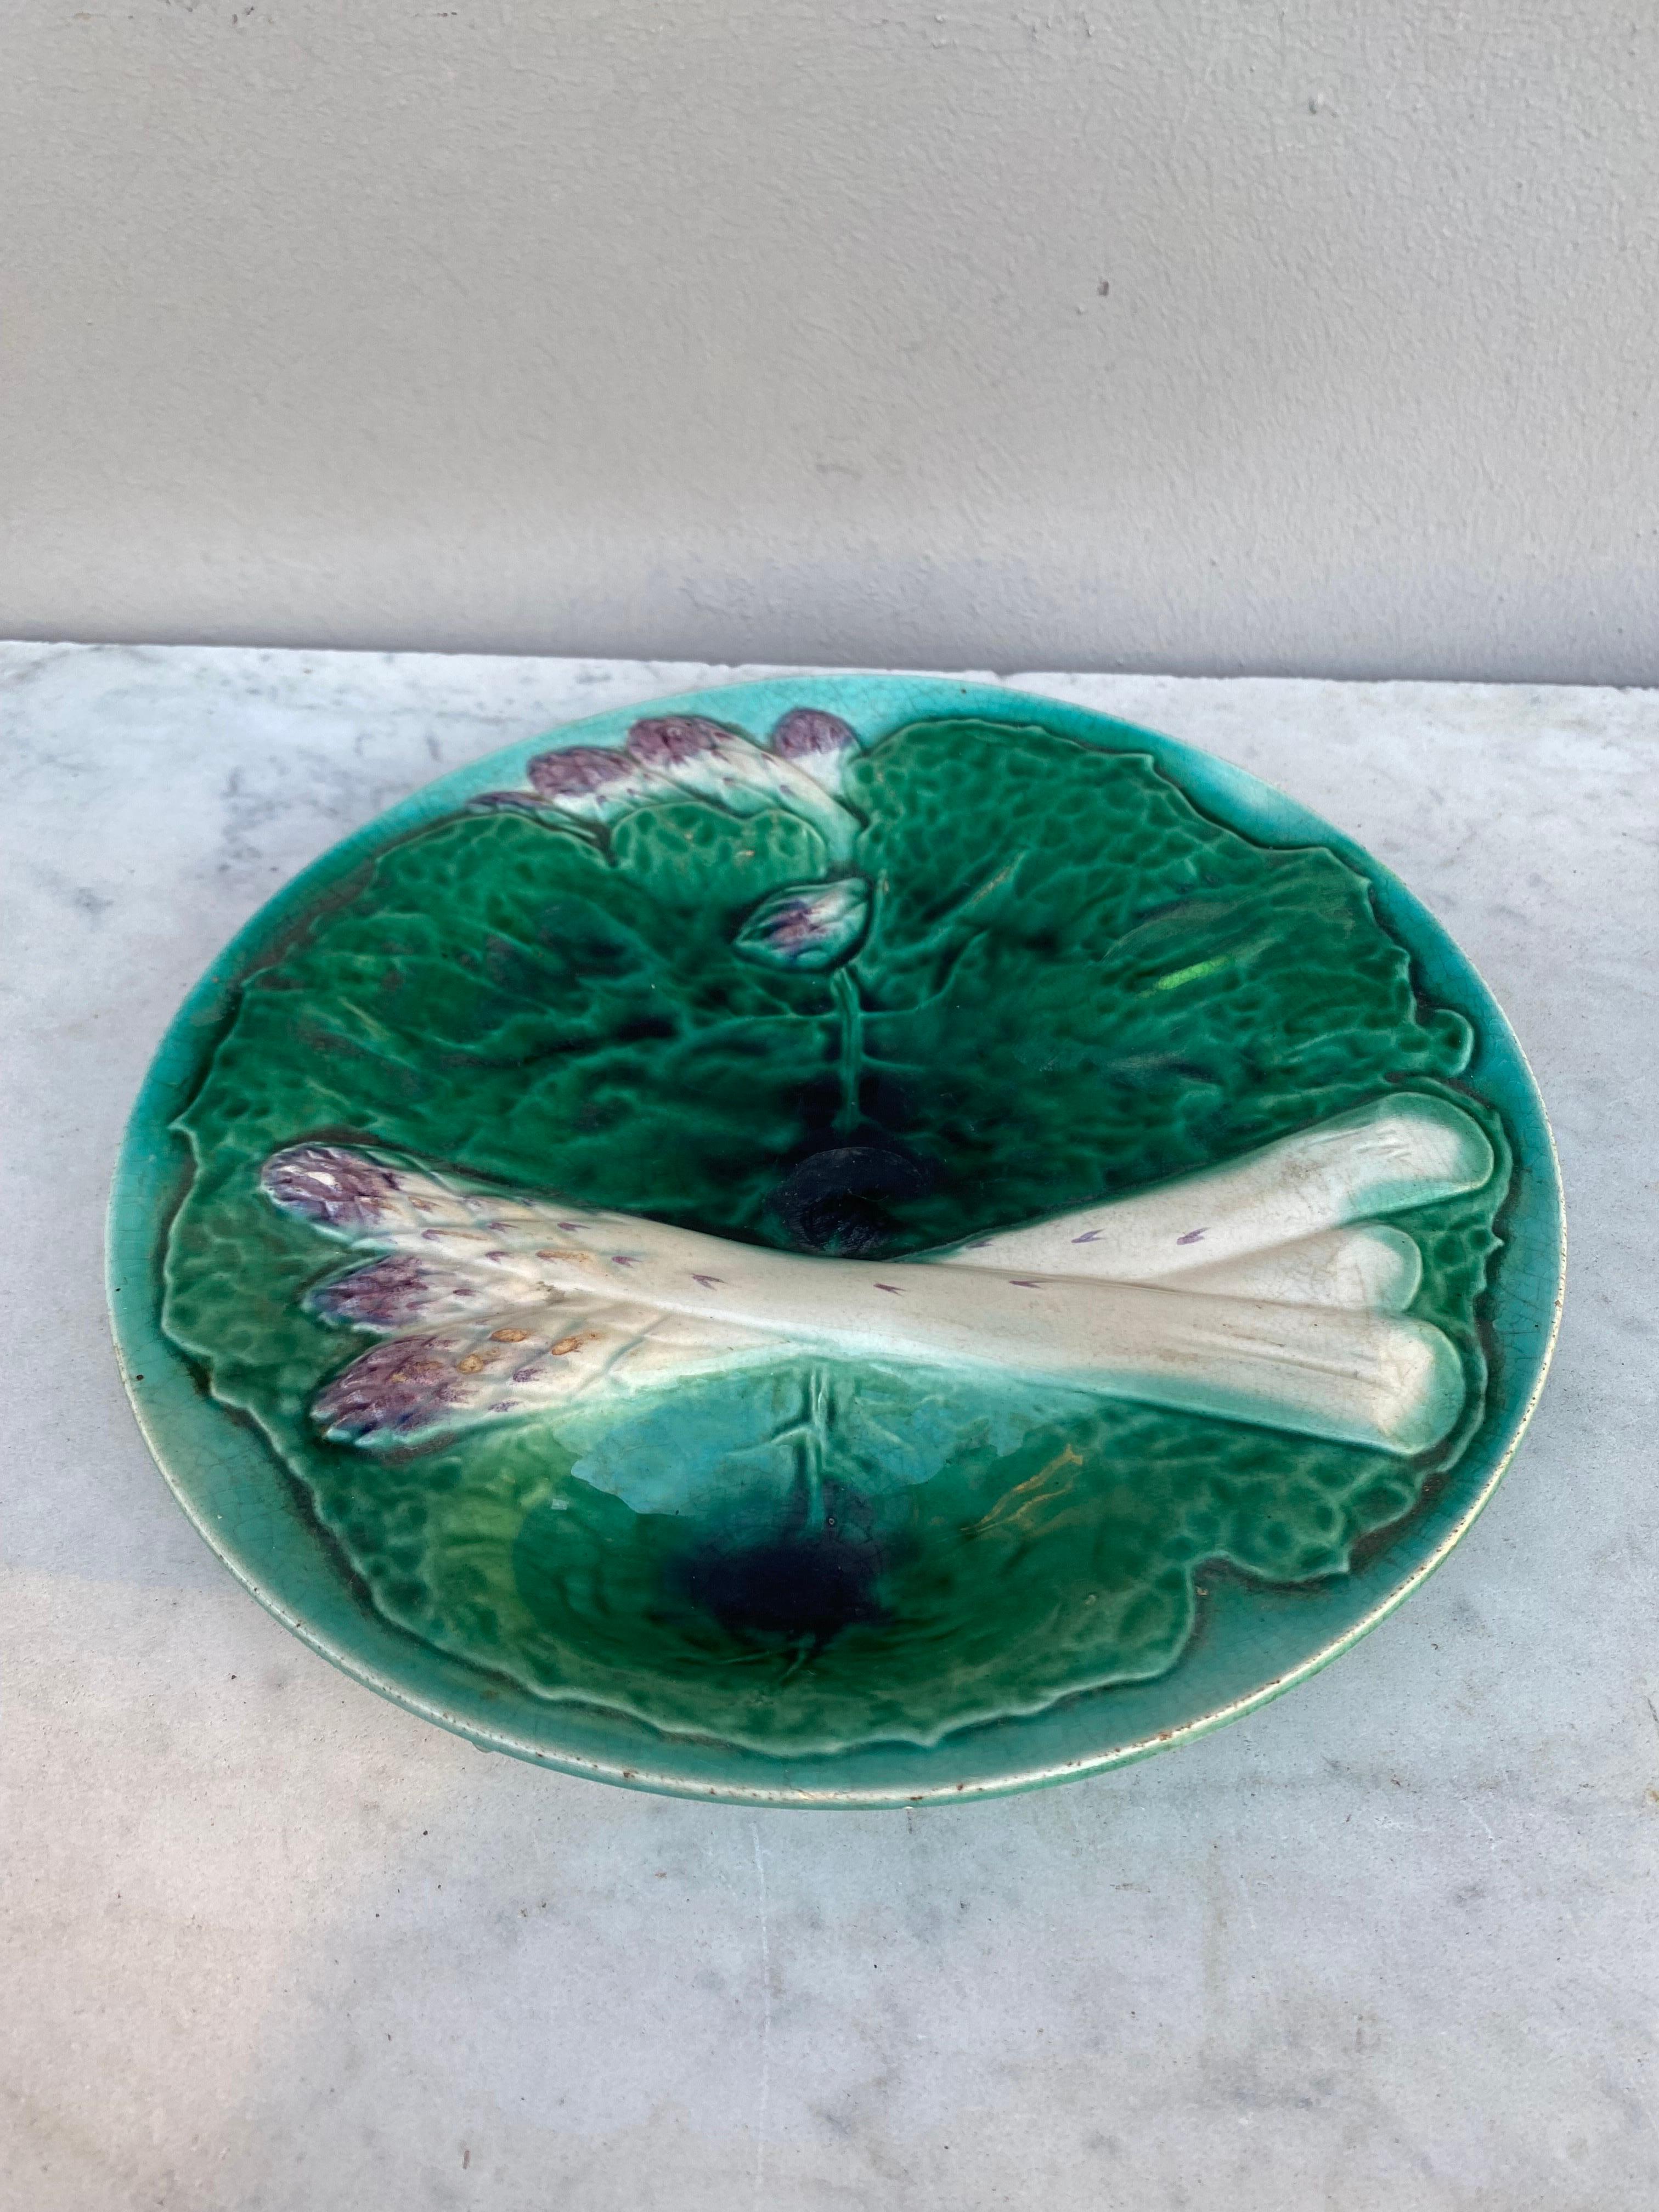 Assiette à asperges en majolique du 19e siècle avec de grandes feuilles de choux verts par la Manufacture de Creil et Montereau.
 